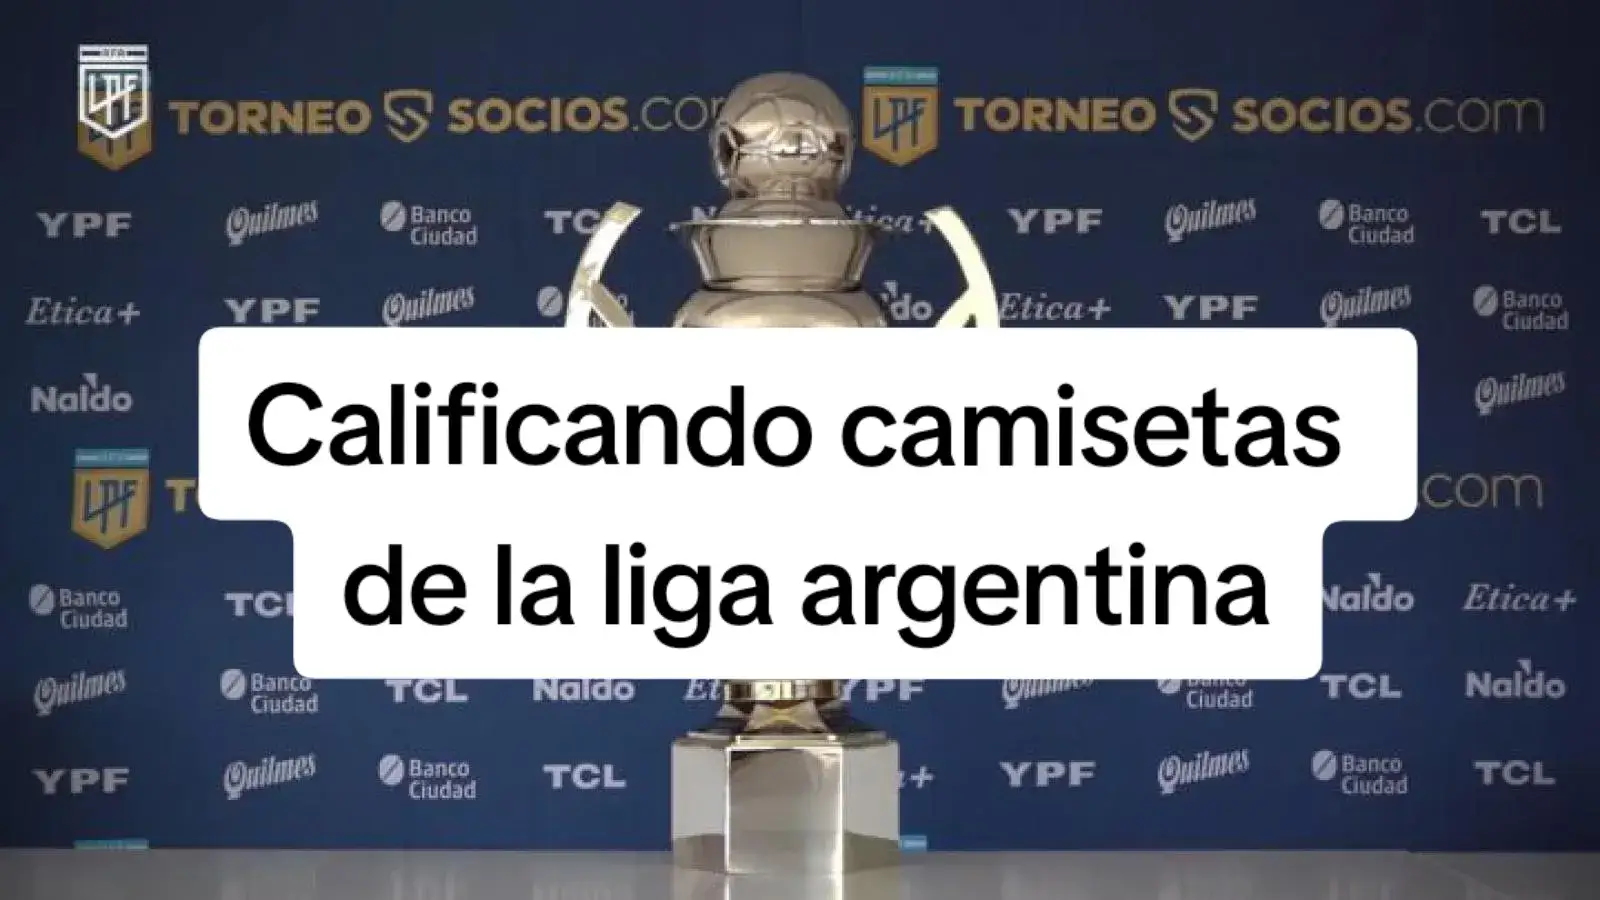 #fyp #parati #futbol #argentina